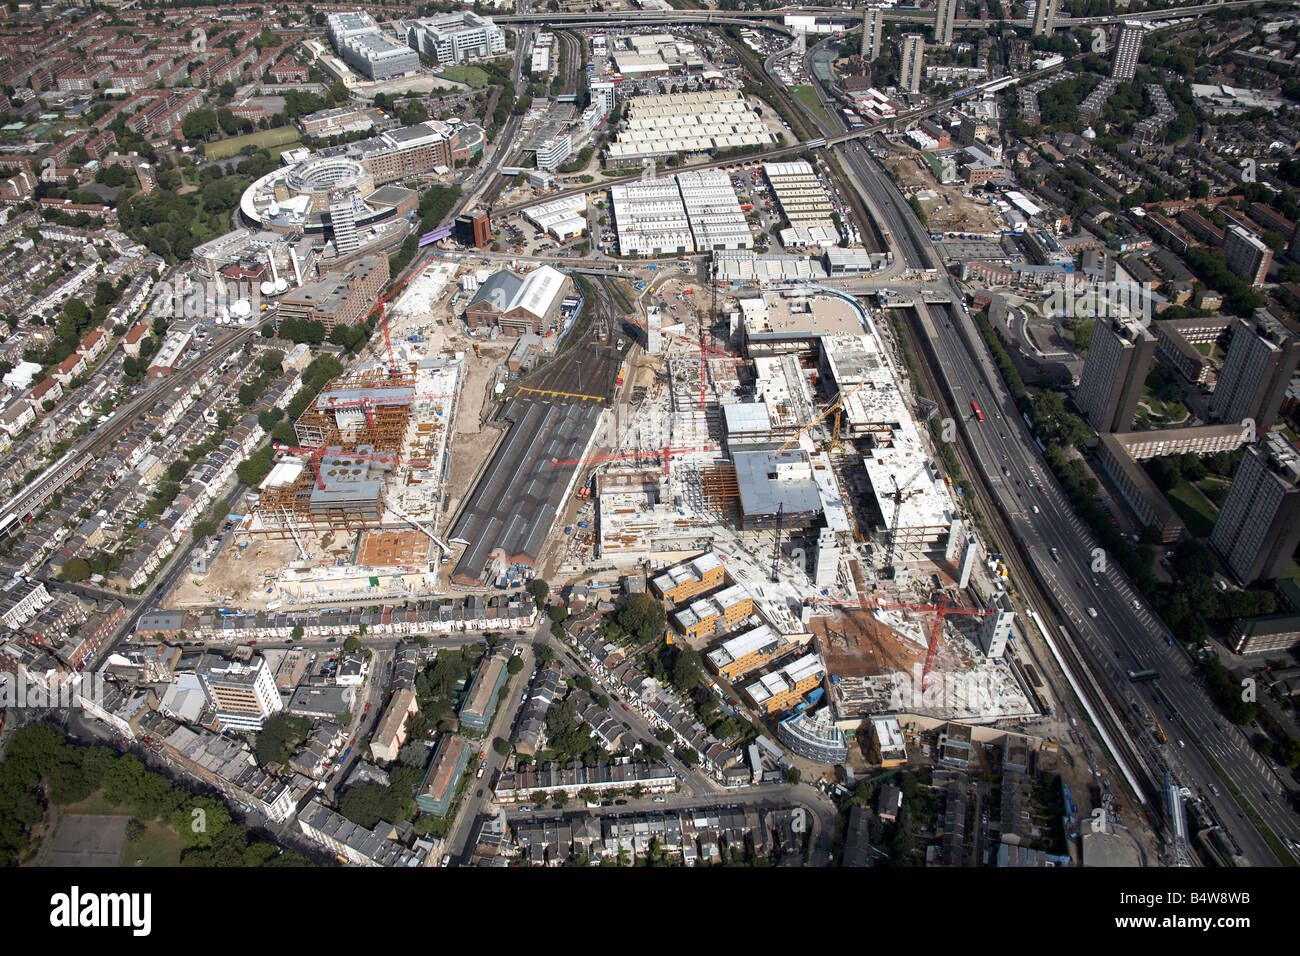 Luftbild nördlich von Westfield White City Entwicklung Bau Website BBC Fernsehen Zentrum West Cross Strecke London W12 W11 UK Stockfoto